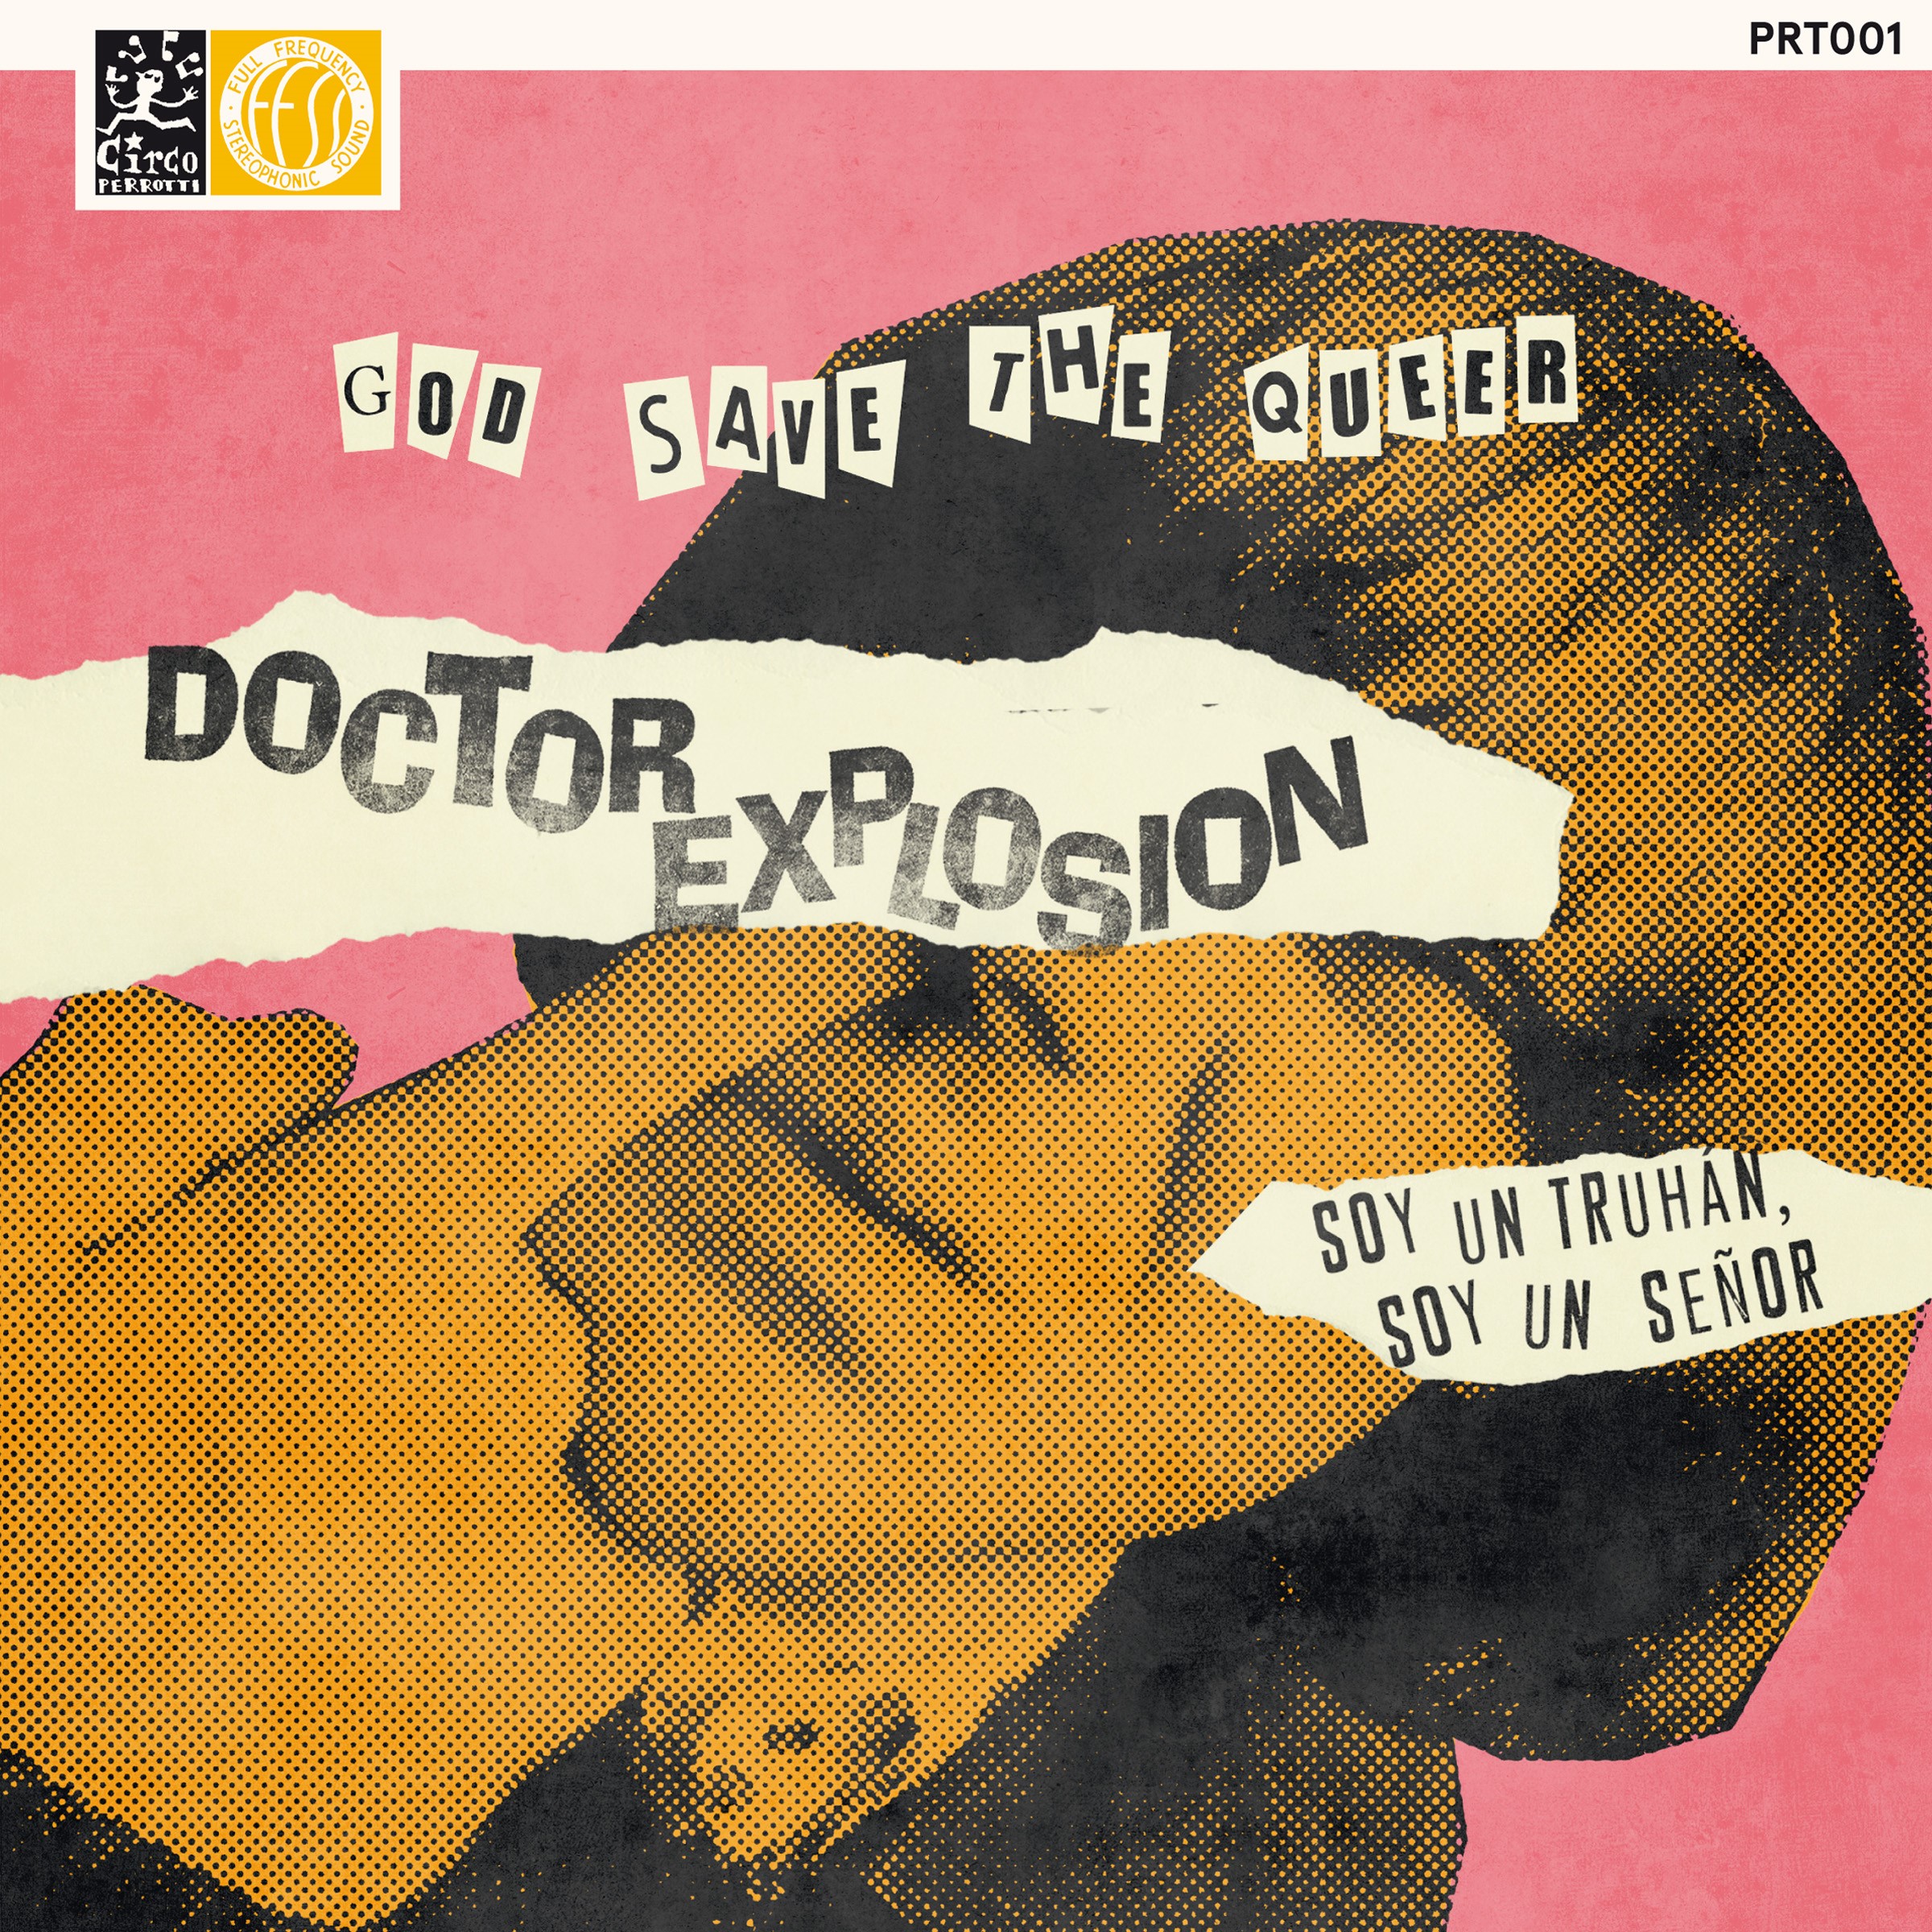 Doctor Explosion publican la versión del tema de Julio Iglesias “Soy un Truhán, Soy un Señor”